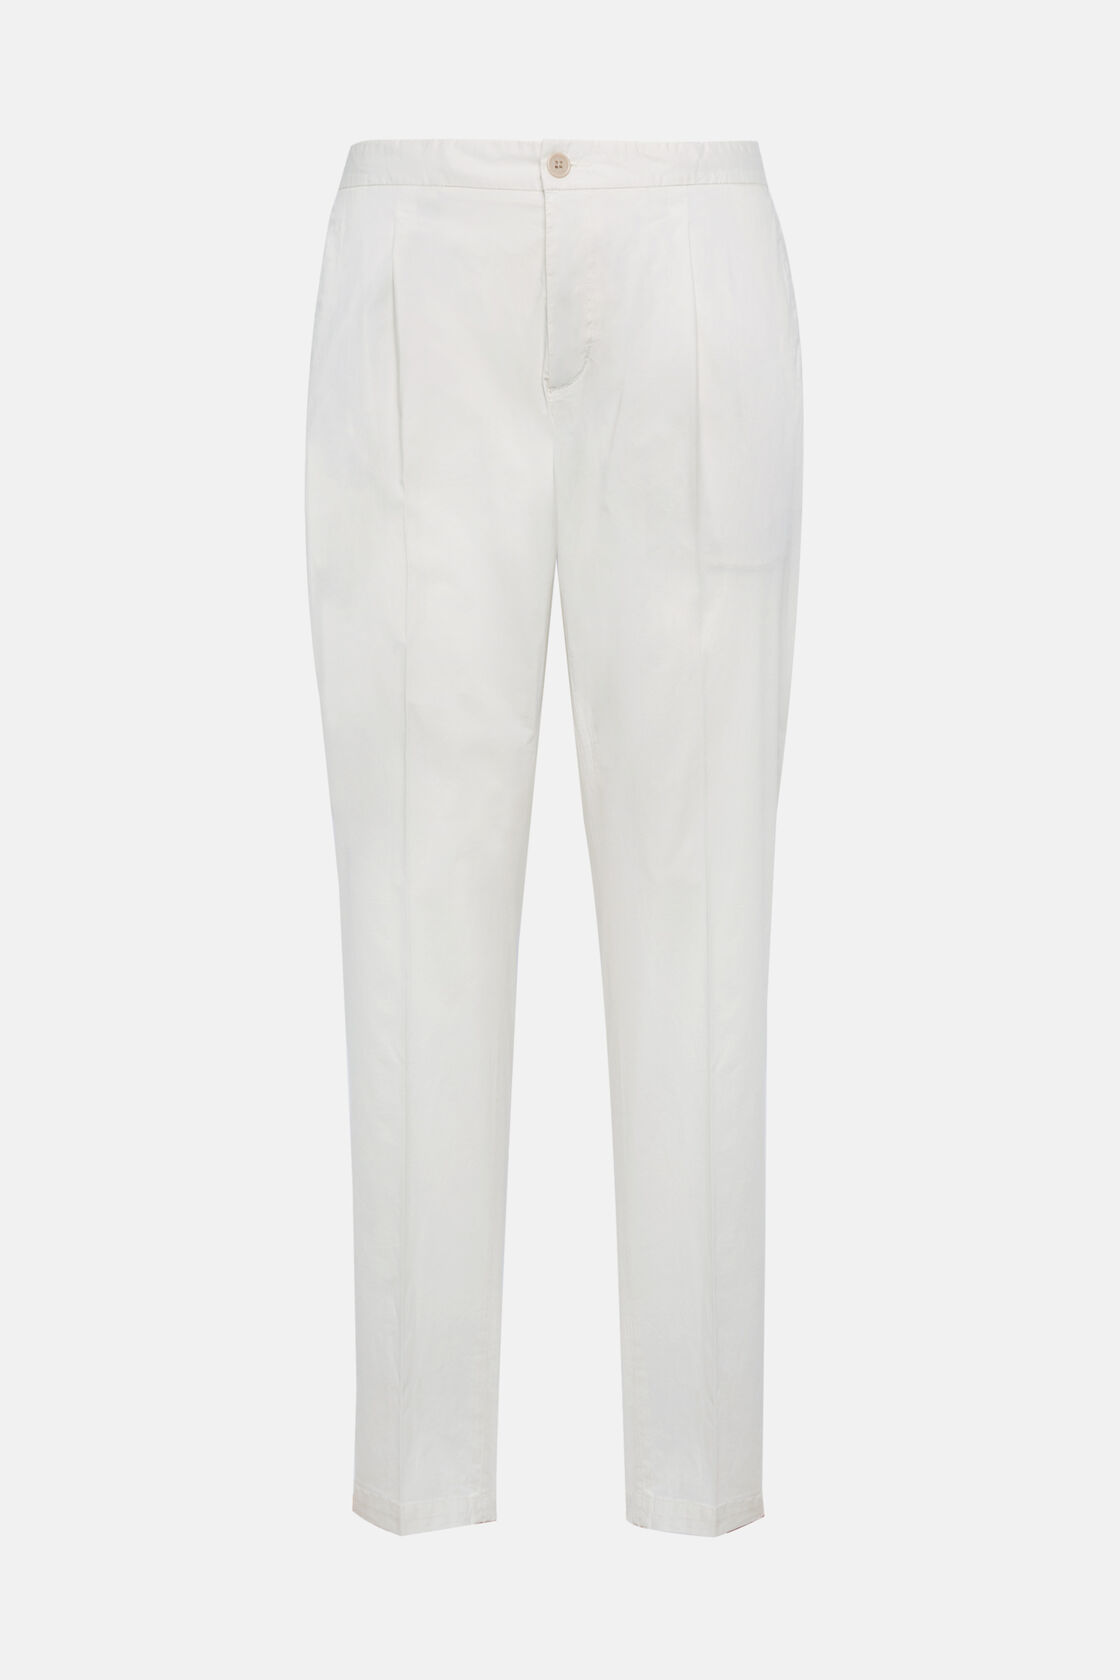 Pantalon en Coton Extensible avec Pinces, Blanc, hi-res